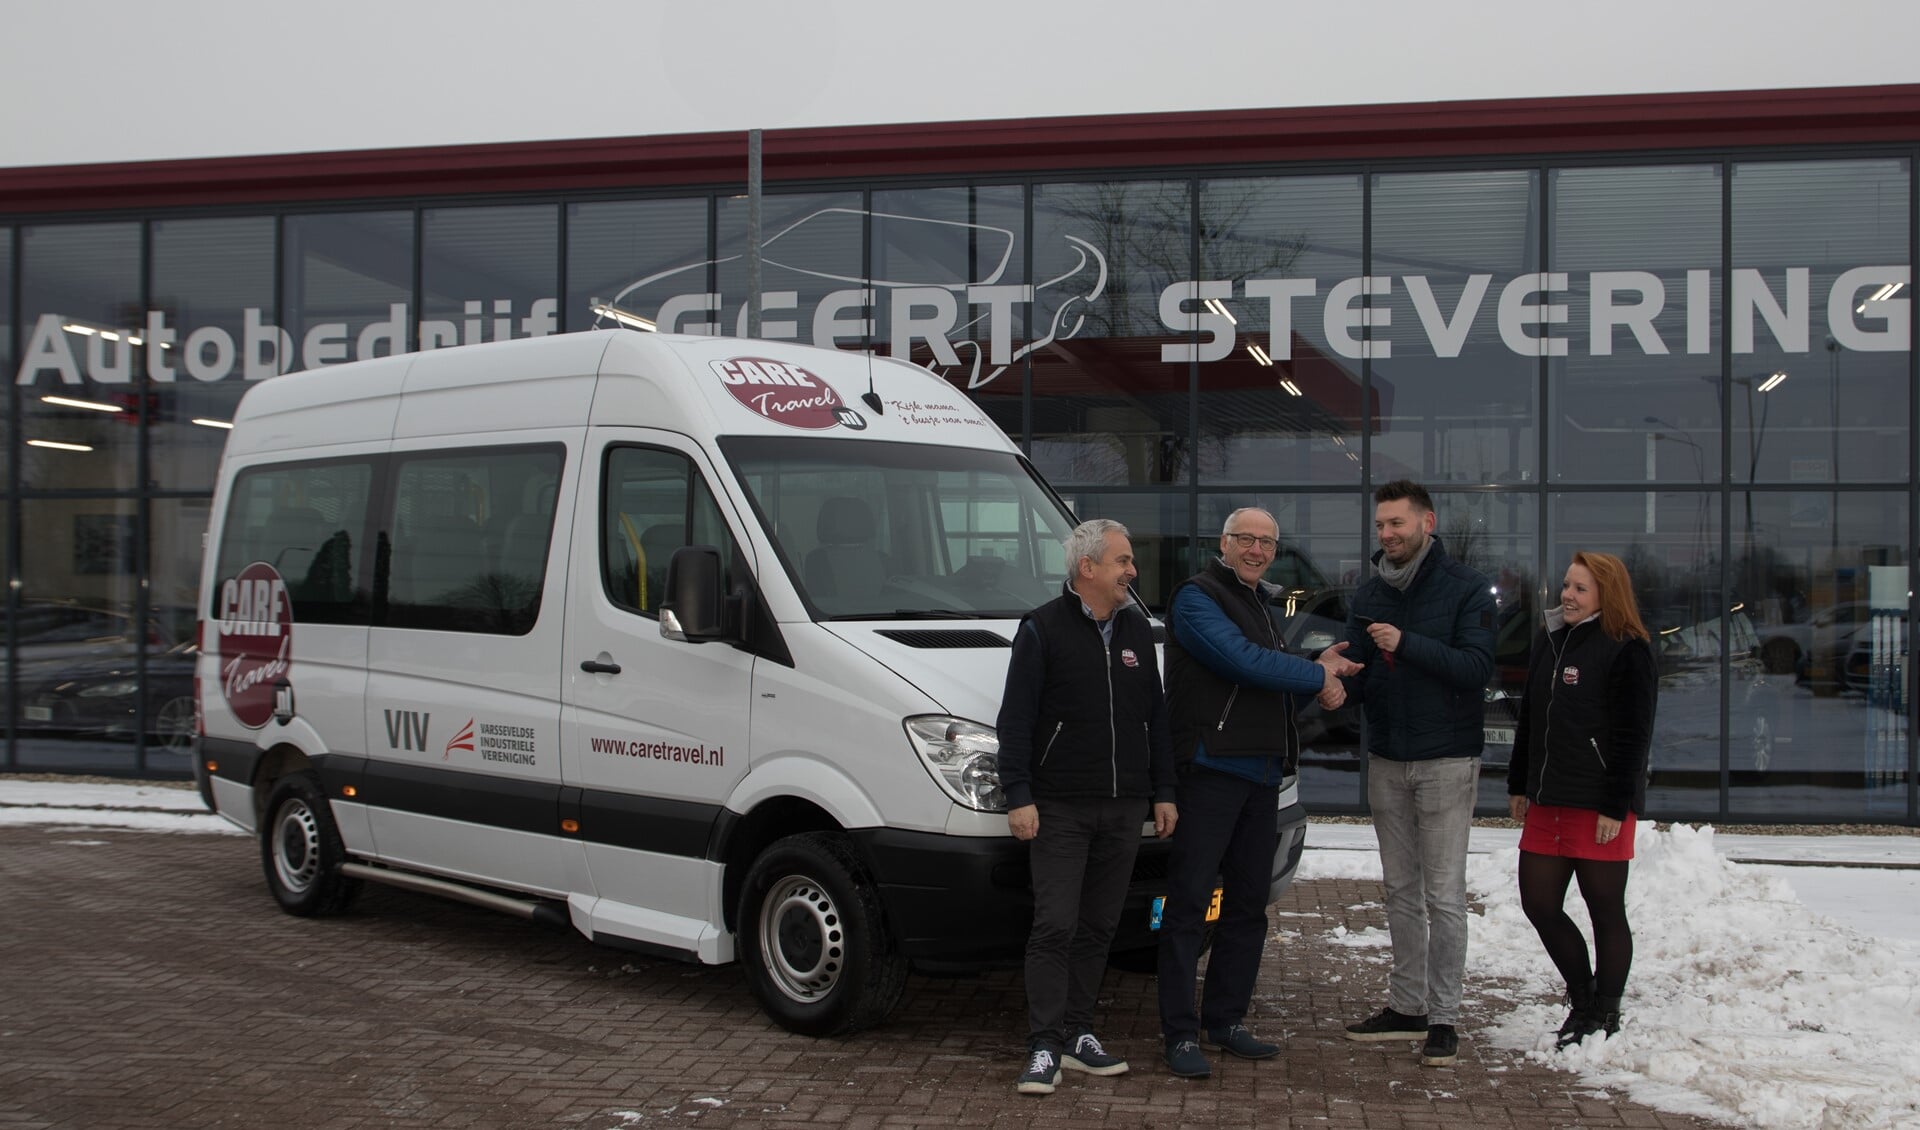 Jos van den Berg, Charly Bussink (CT busbeheer), Niek Vredegoor van Autobedrijf Steverink en Sharon van Arem, de jongste Care Travel vrijwilliger. Foto Marius Kooistra